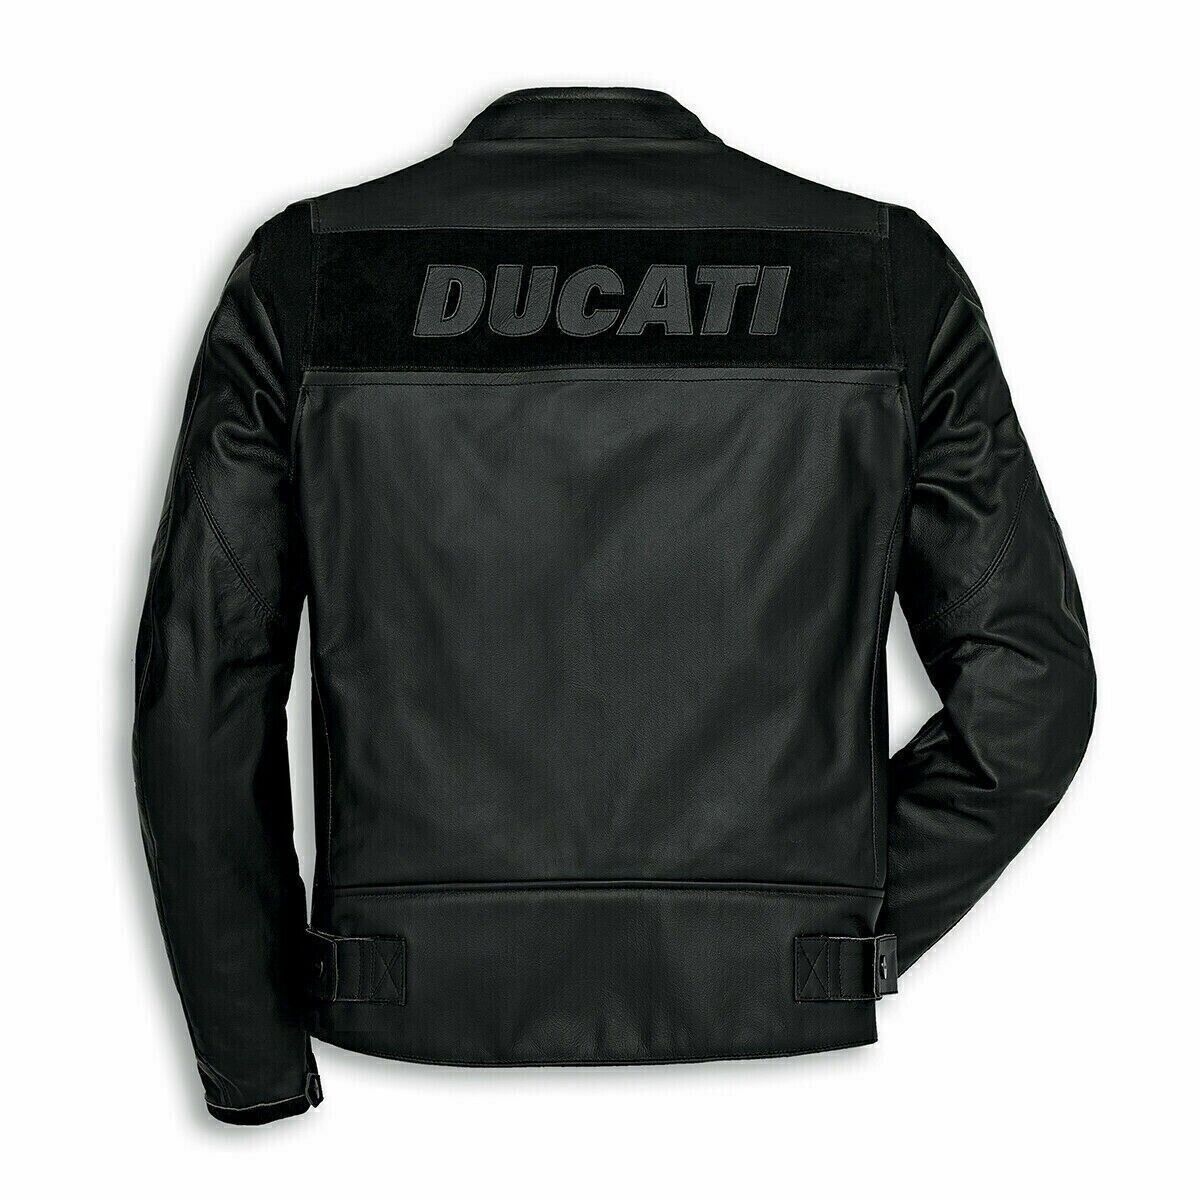 Ducati Bikers Racing Jacket Motorbike Jacket Cowhide Leather Motorcycle Jacket